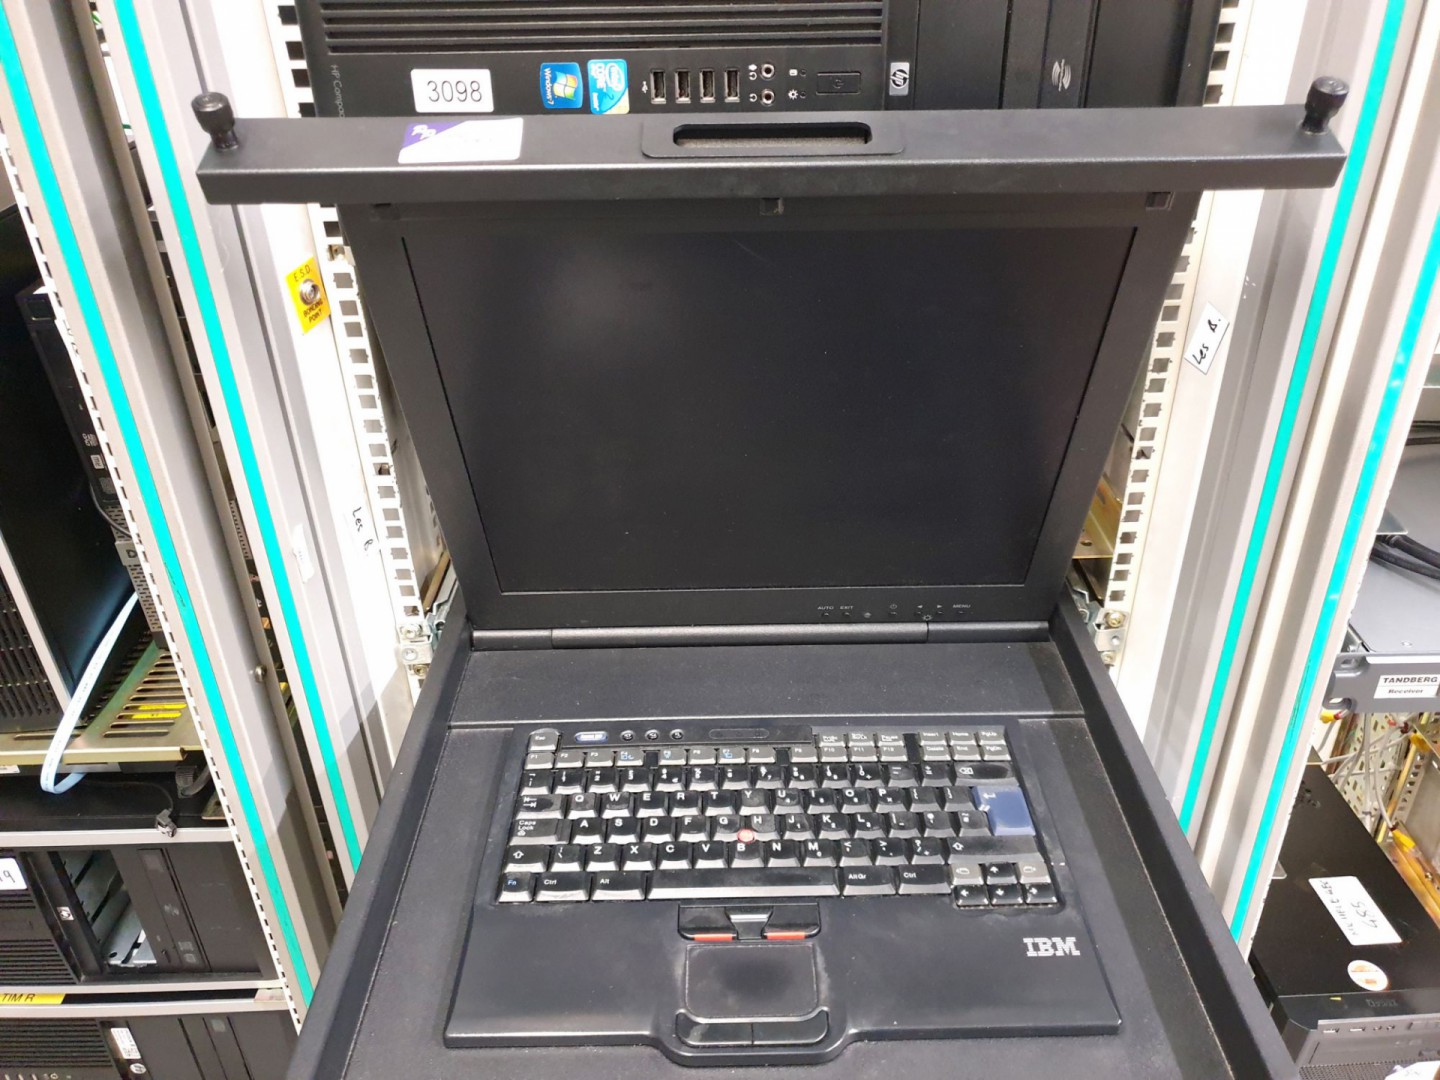 IBM 23K4885 rack mount monitor, keyboard